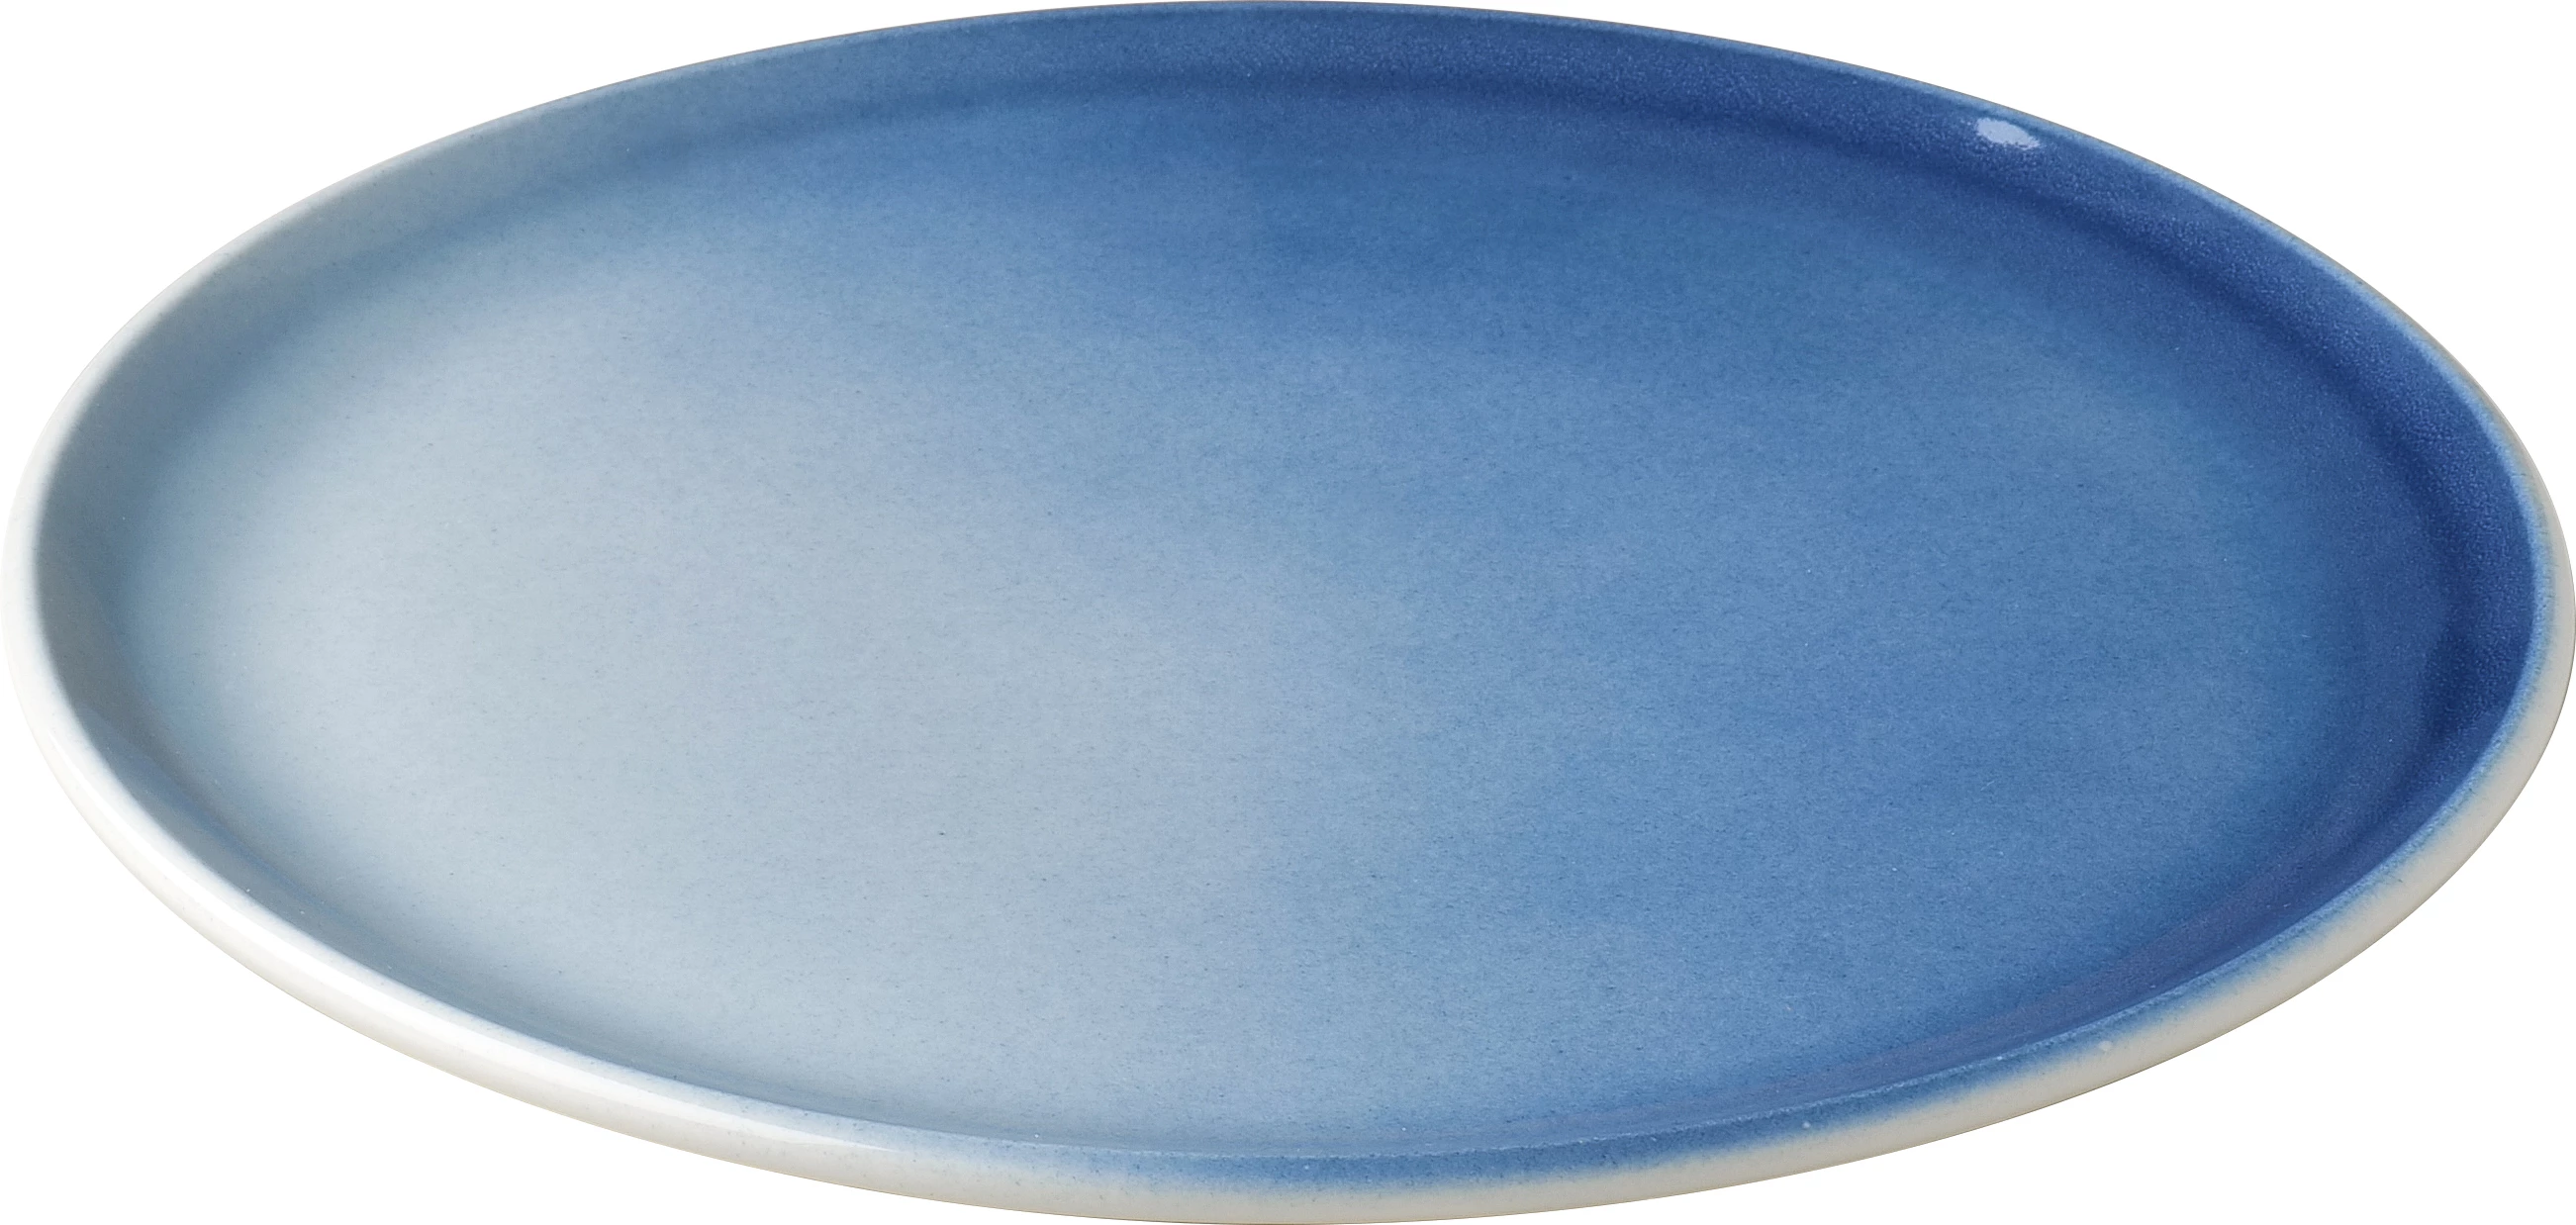 Figgjo Pax flad tallerken, blå, ø26 cm